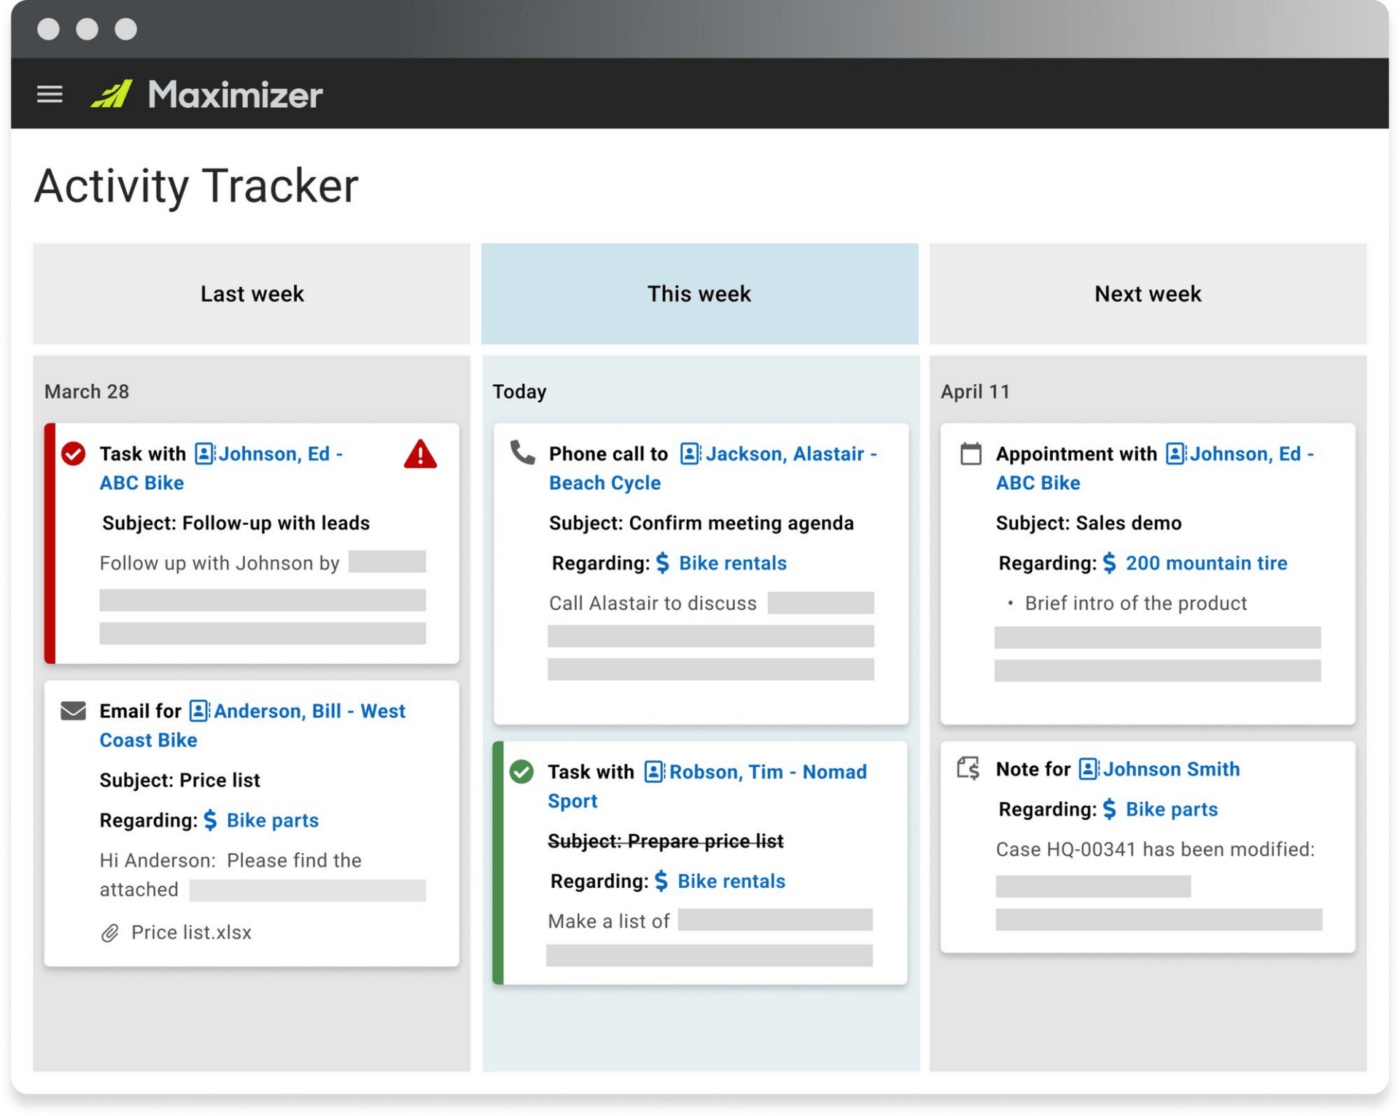 Activity Tracker on Maximizer